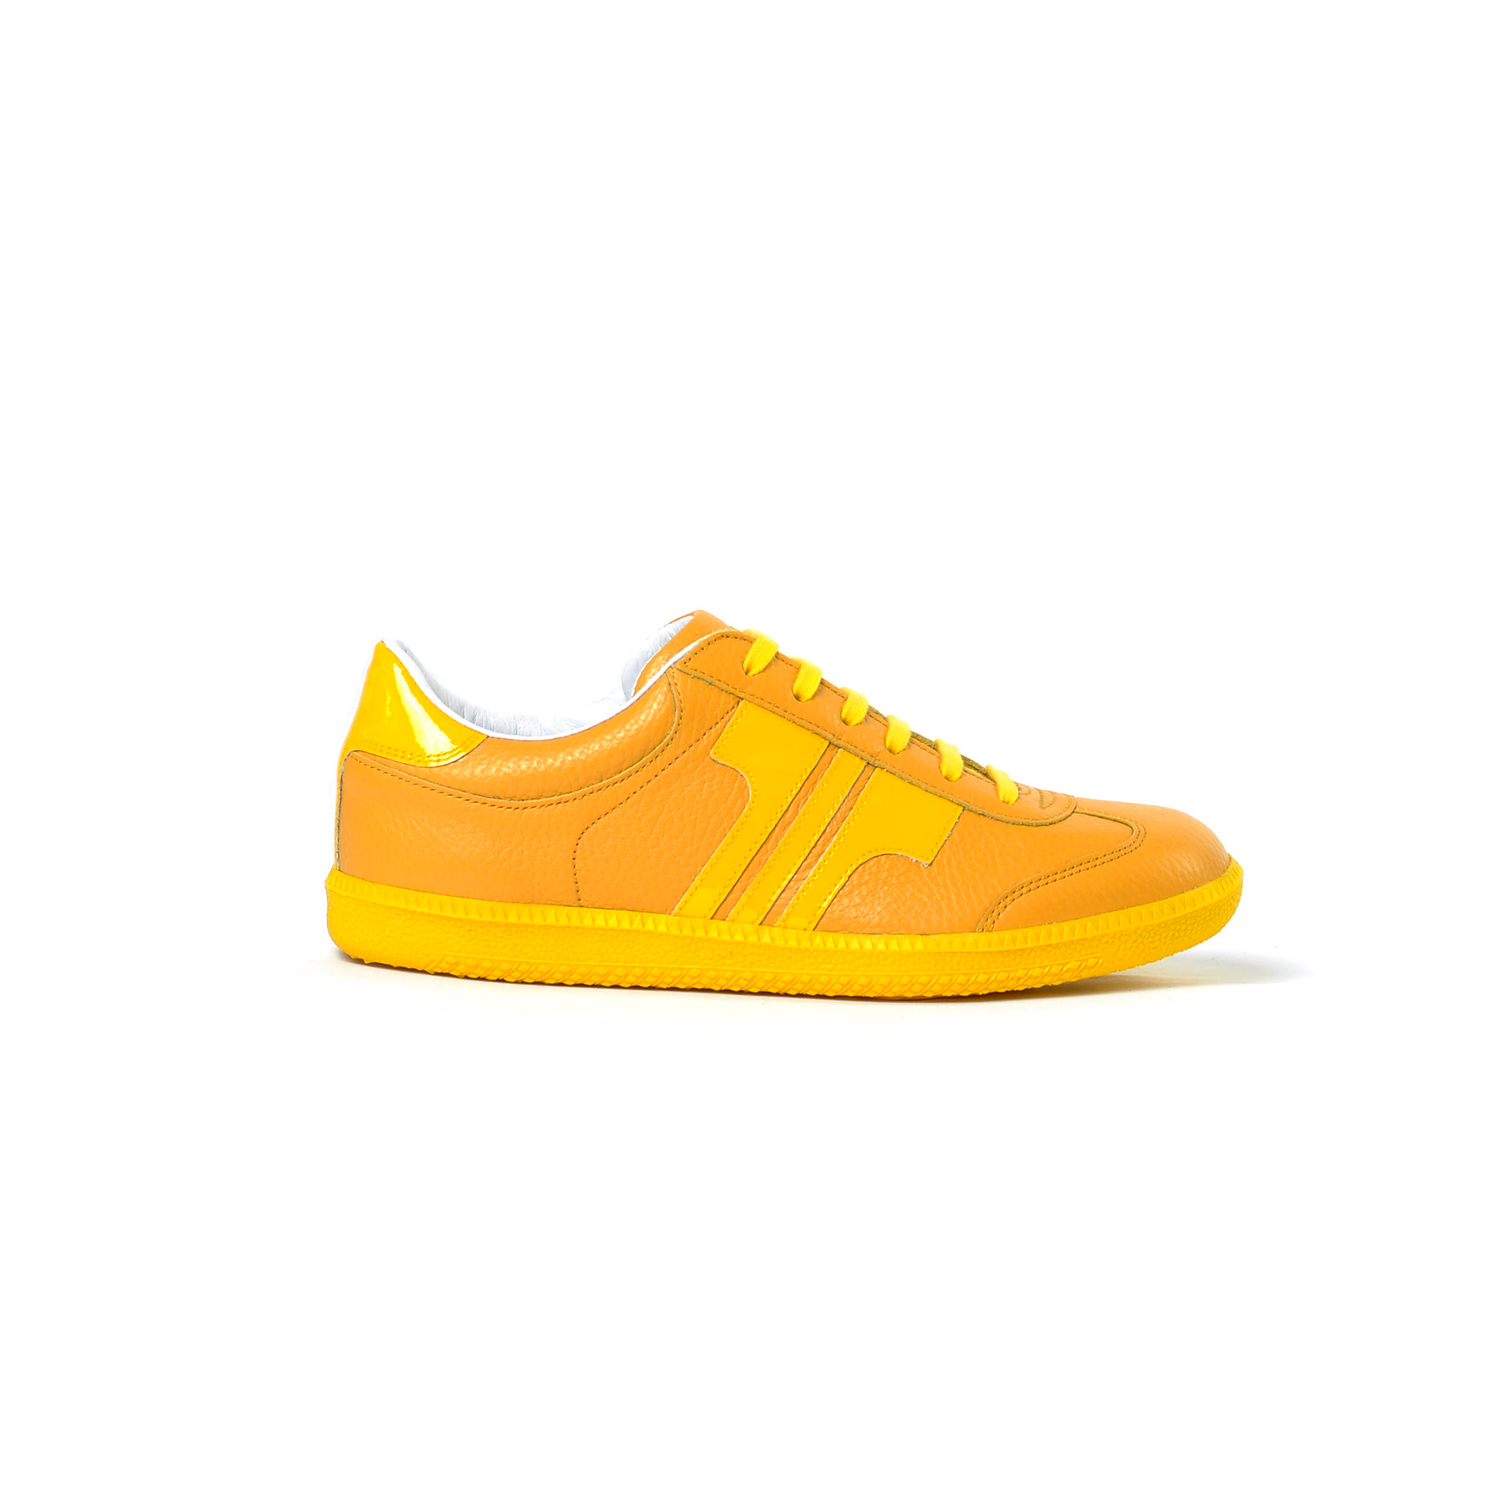 Tisza cipő - Compakt - Sárga-lakk